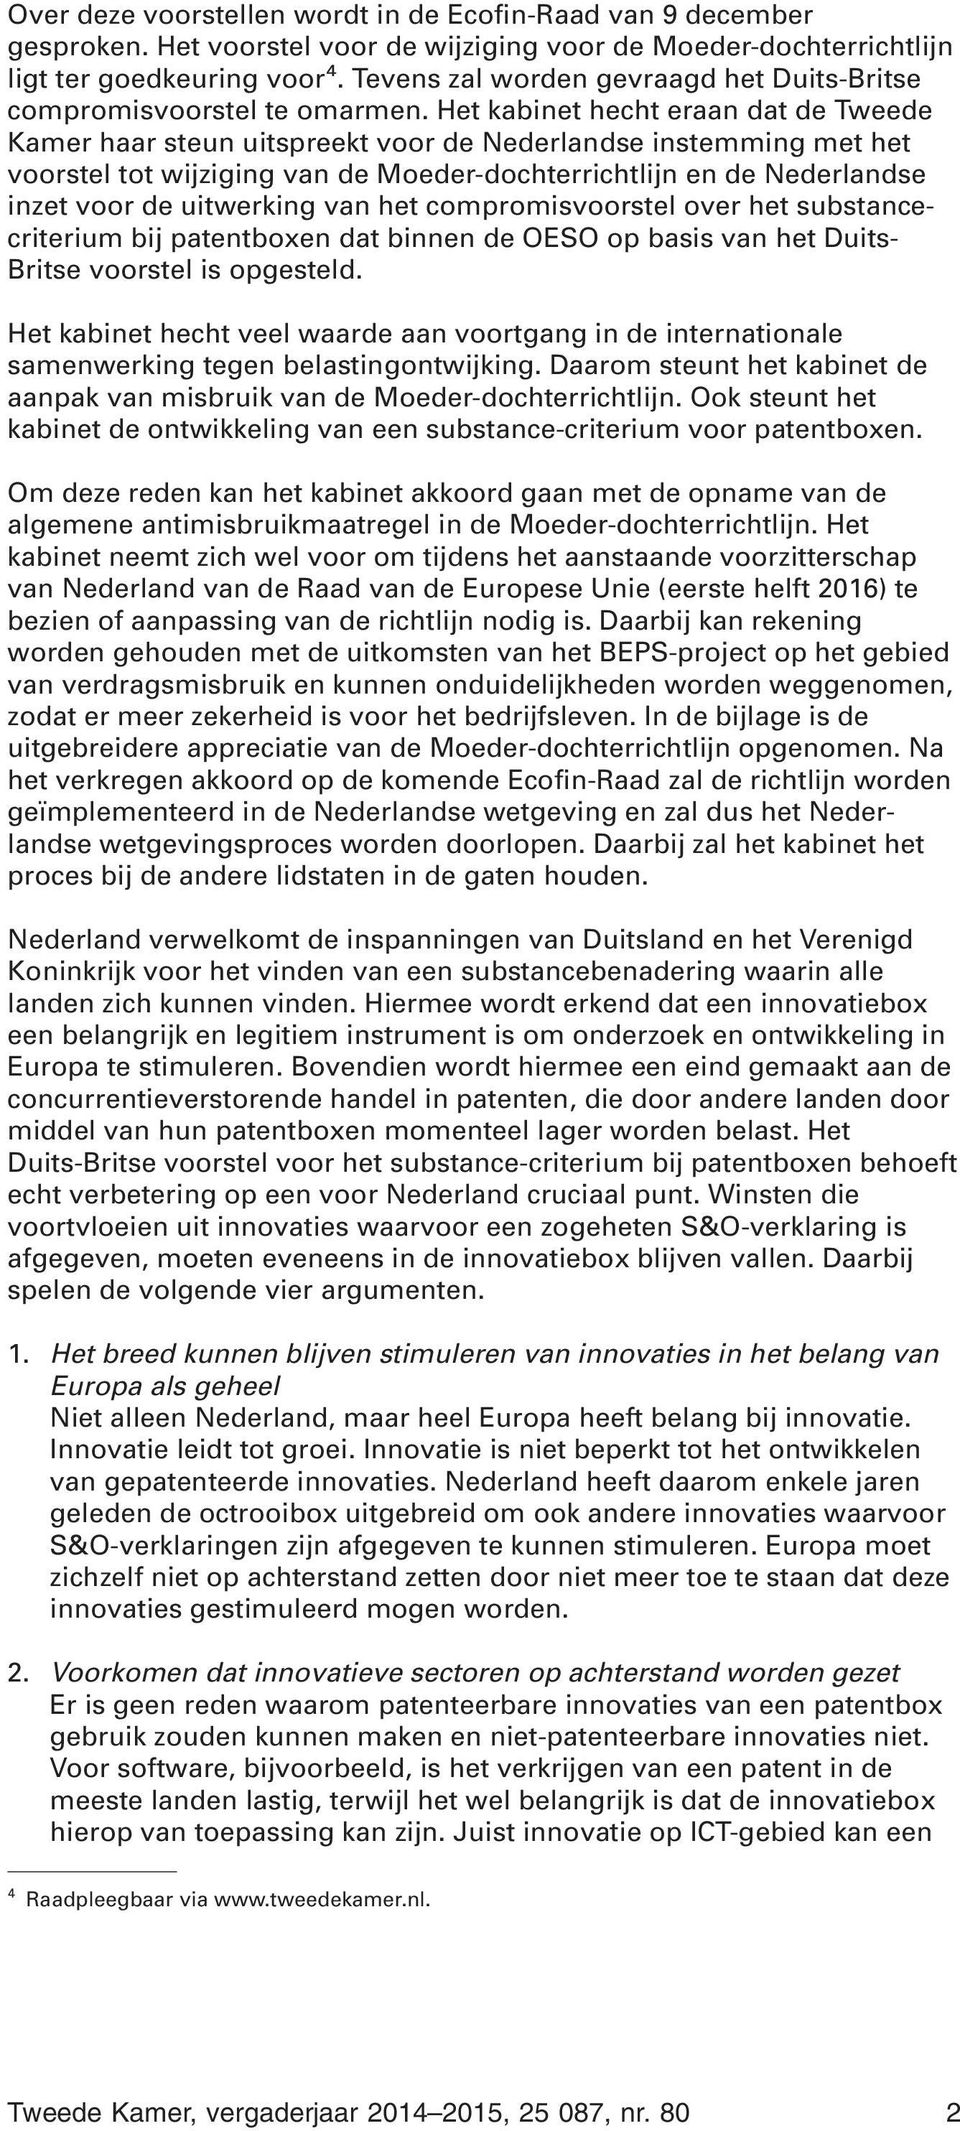 Het kabinet hecht eraan dat de Tweede Kamer haar steun uitspreekt voor de Nederlandse instemming met het voorstel tot wijziging van de Moeder-dochterrichtlijn en de Nederlandse inzet voor de